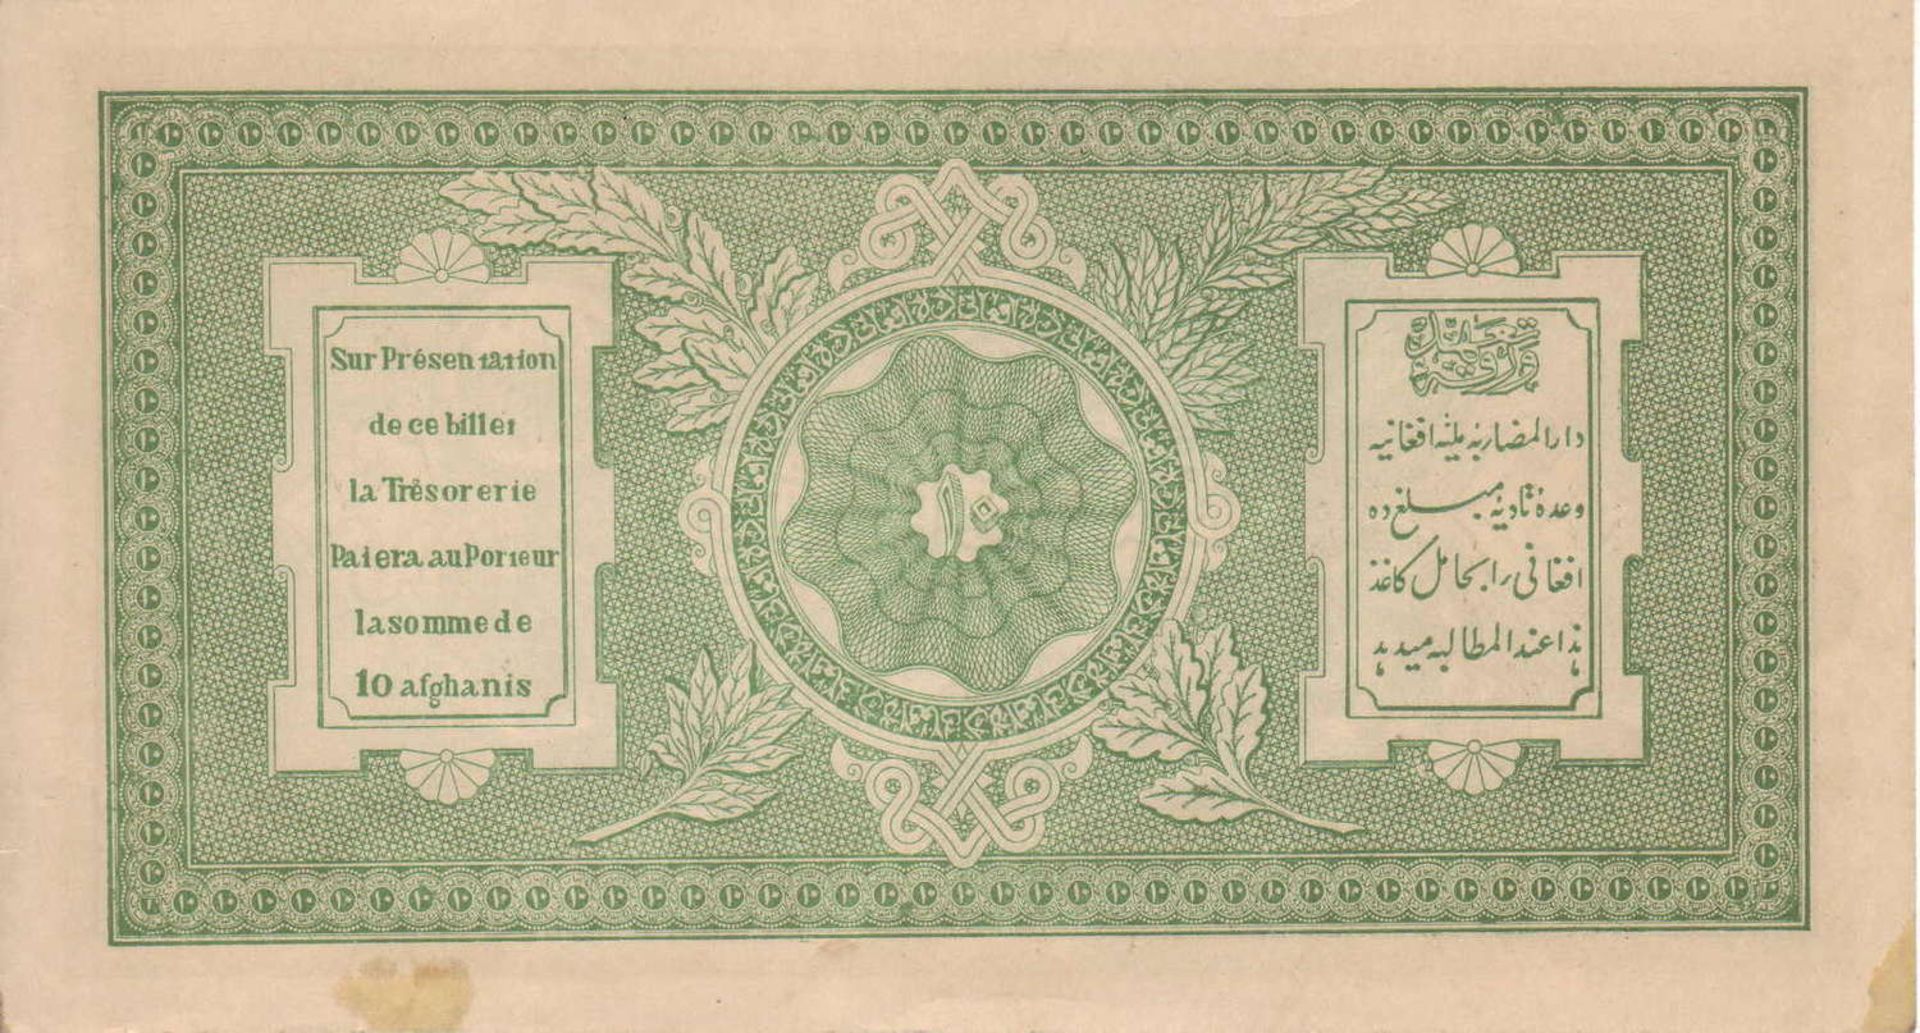 Afghanistan 1926, 10 Afghanis - Banknote, P 8. SS.Afghanistan 1926, 10 Afghanis - Banknote, P 8.